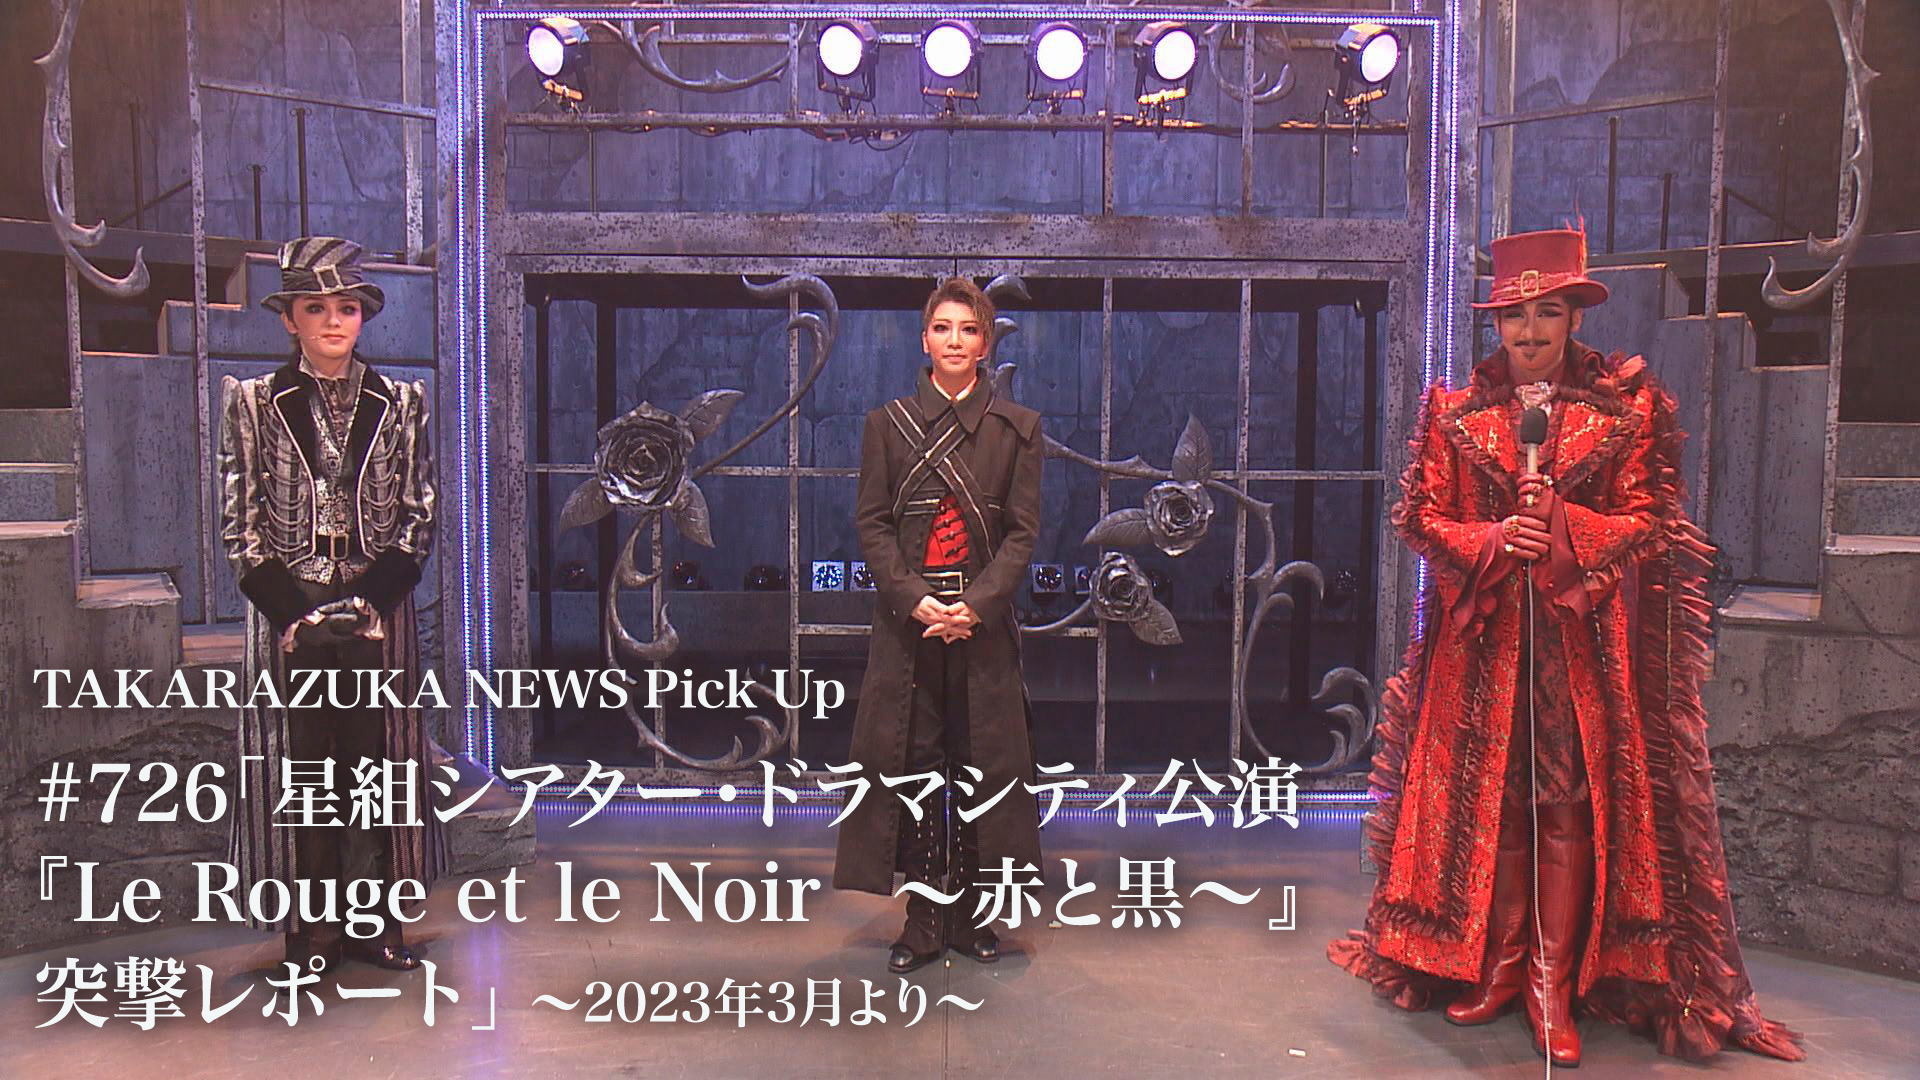 TAKARAZUKA NEWS Pick Up #726「星組シアター・ドラマシティ 